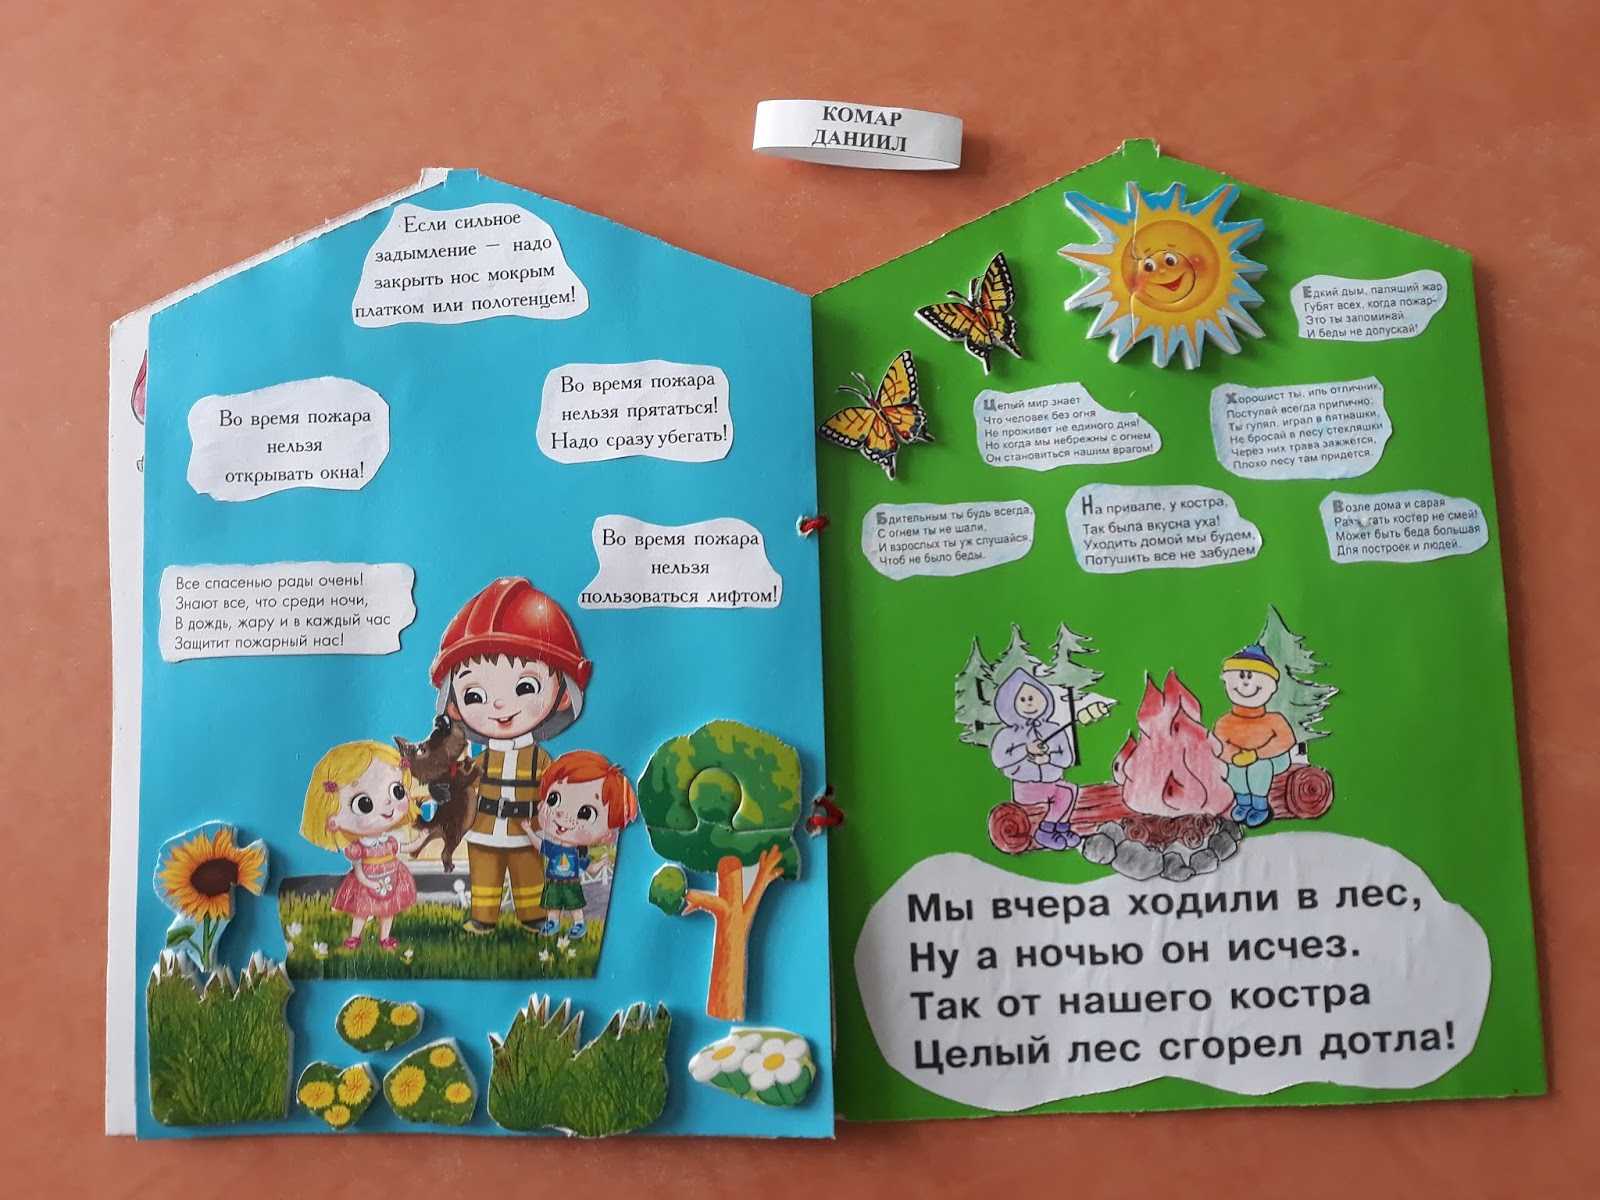 Как сделать книжку малышку своими руками. книжки малышки для детского сада и школы